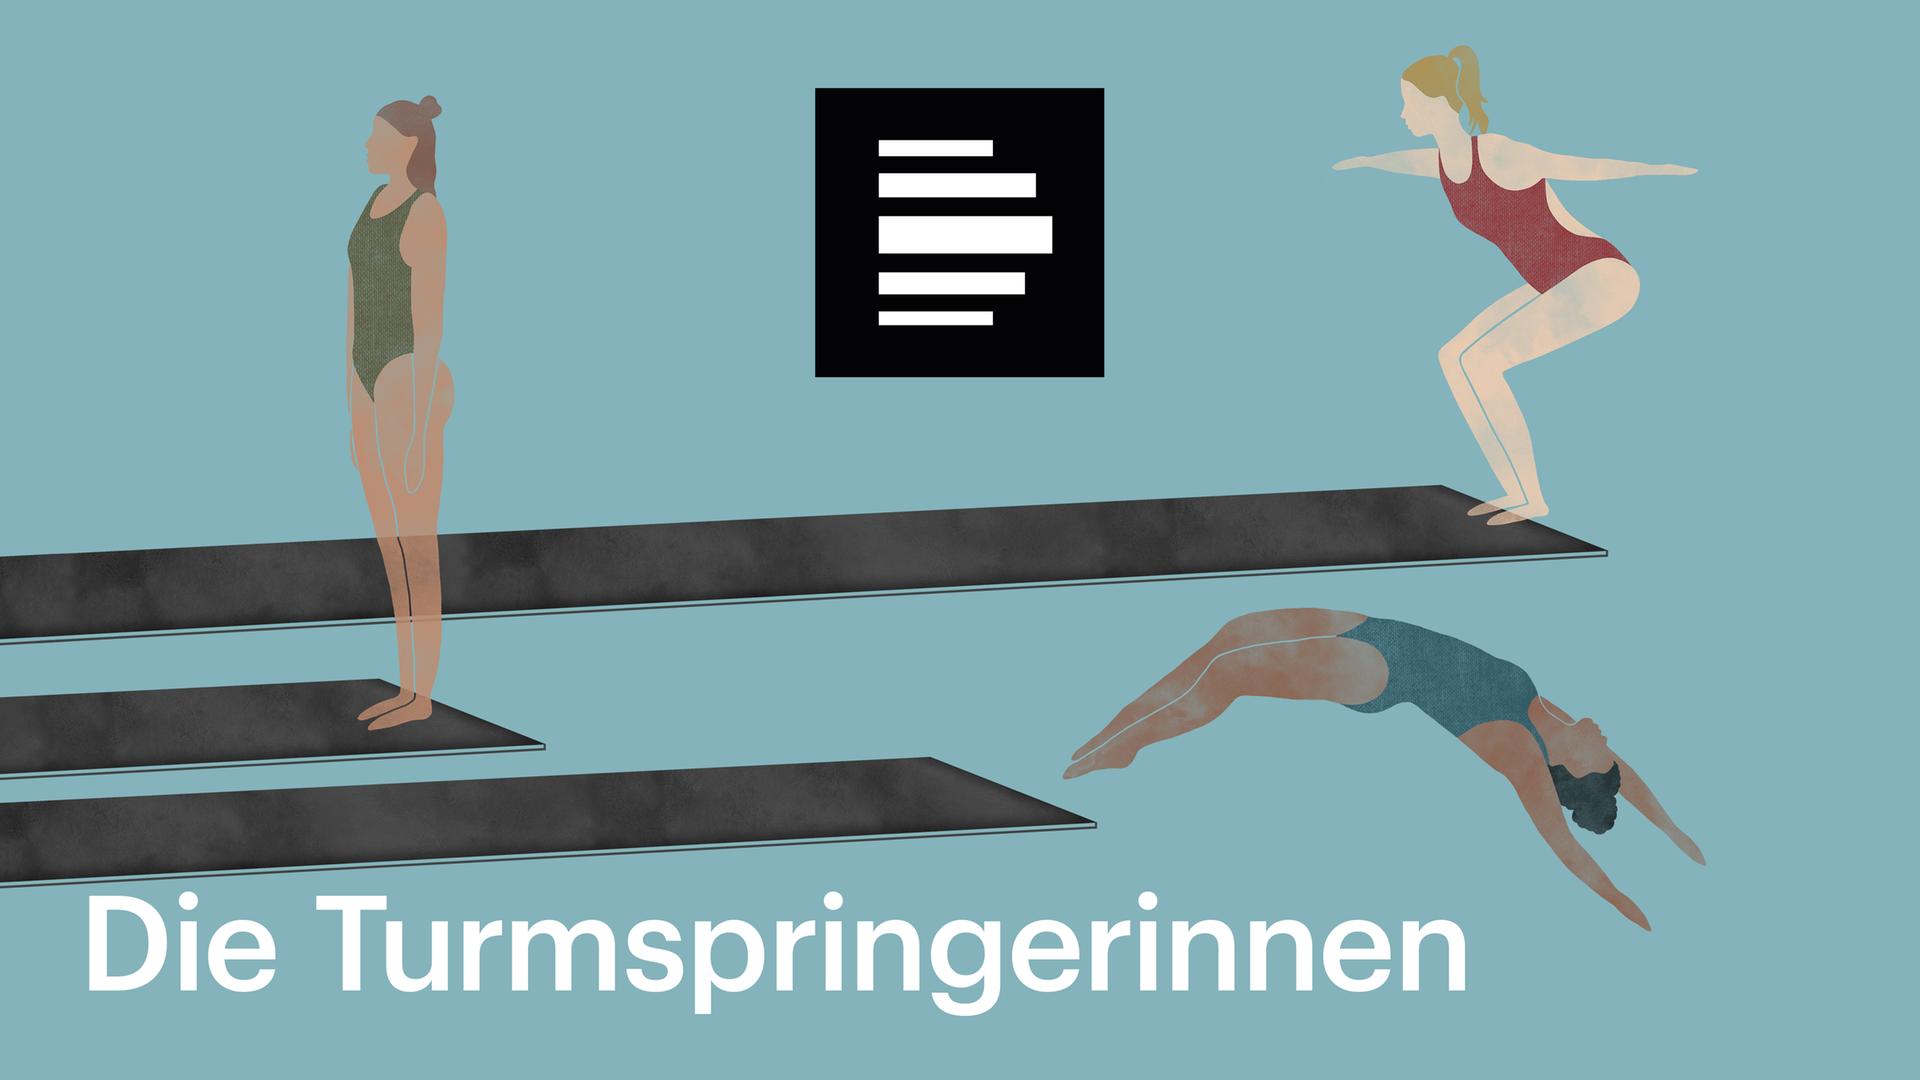 Die Turmspringerinnen: Die Zeichnung zum Podcast zeigt drei Turmspringerinnen auf Sprungbrettern. Eine bereitet sich auf den Sprung vor, eine ist kurz vor dem Absprung, die dritte ist schon in der Luft